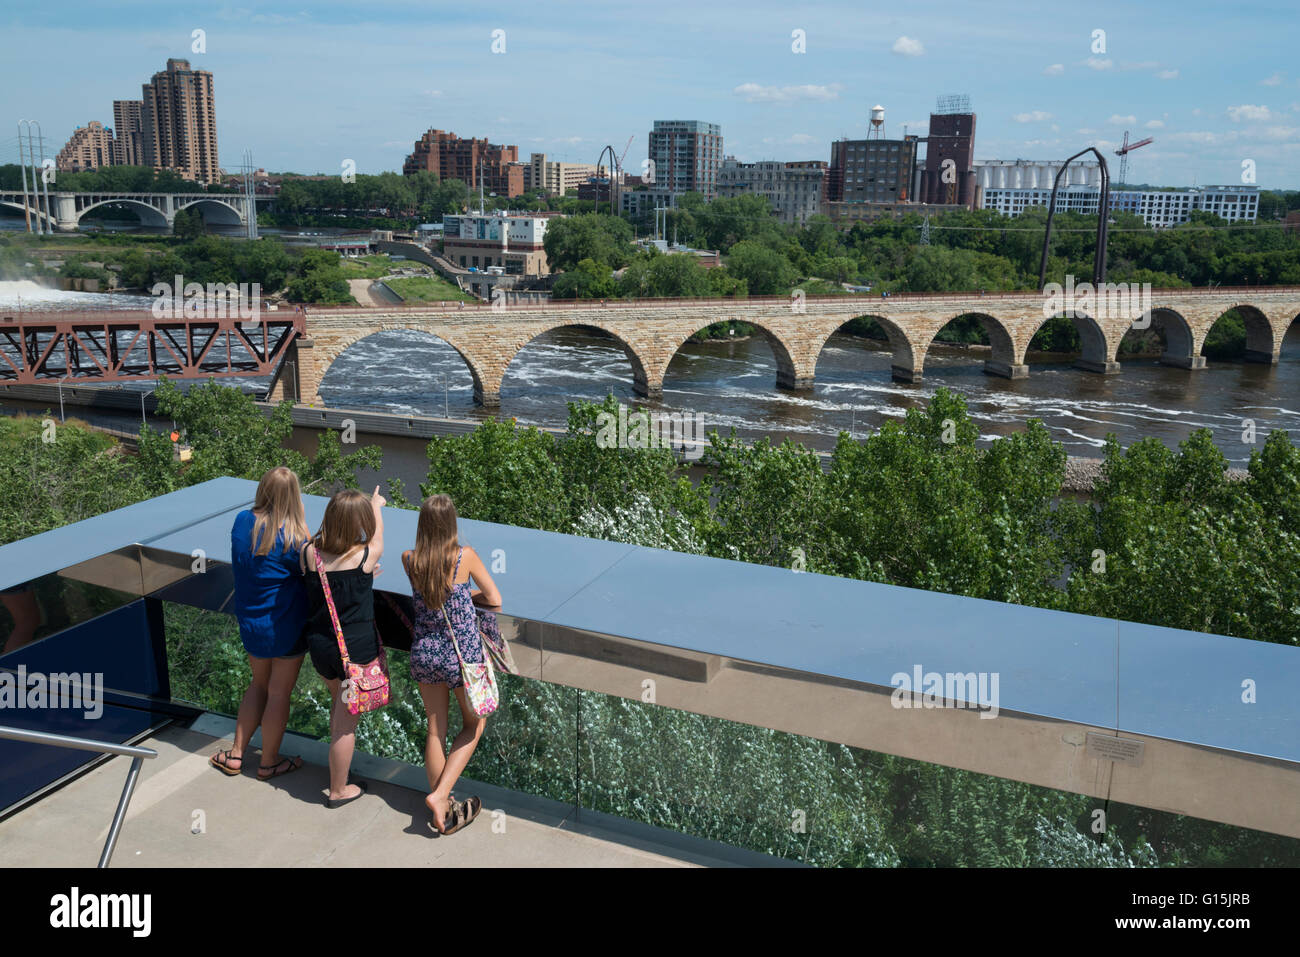 Vue depuis le pont sans fin, pont Guthrie, Minneapolis, Minnesota, États-Unis d'Amérique, Amérique du Nord Banque D'Images